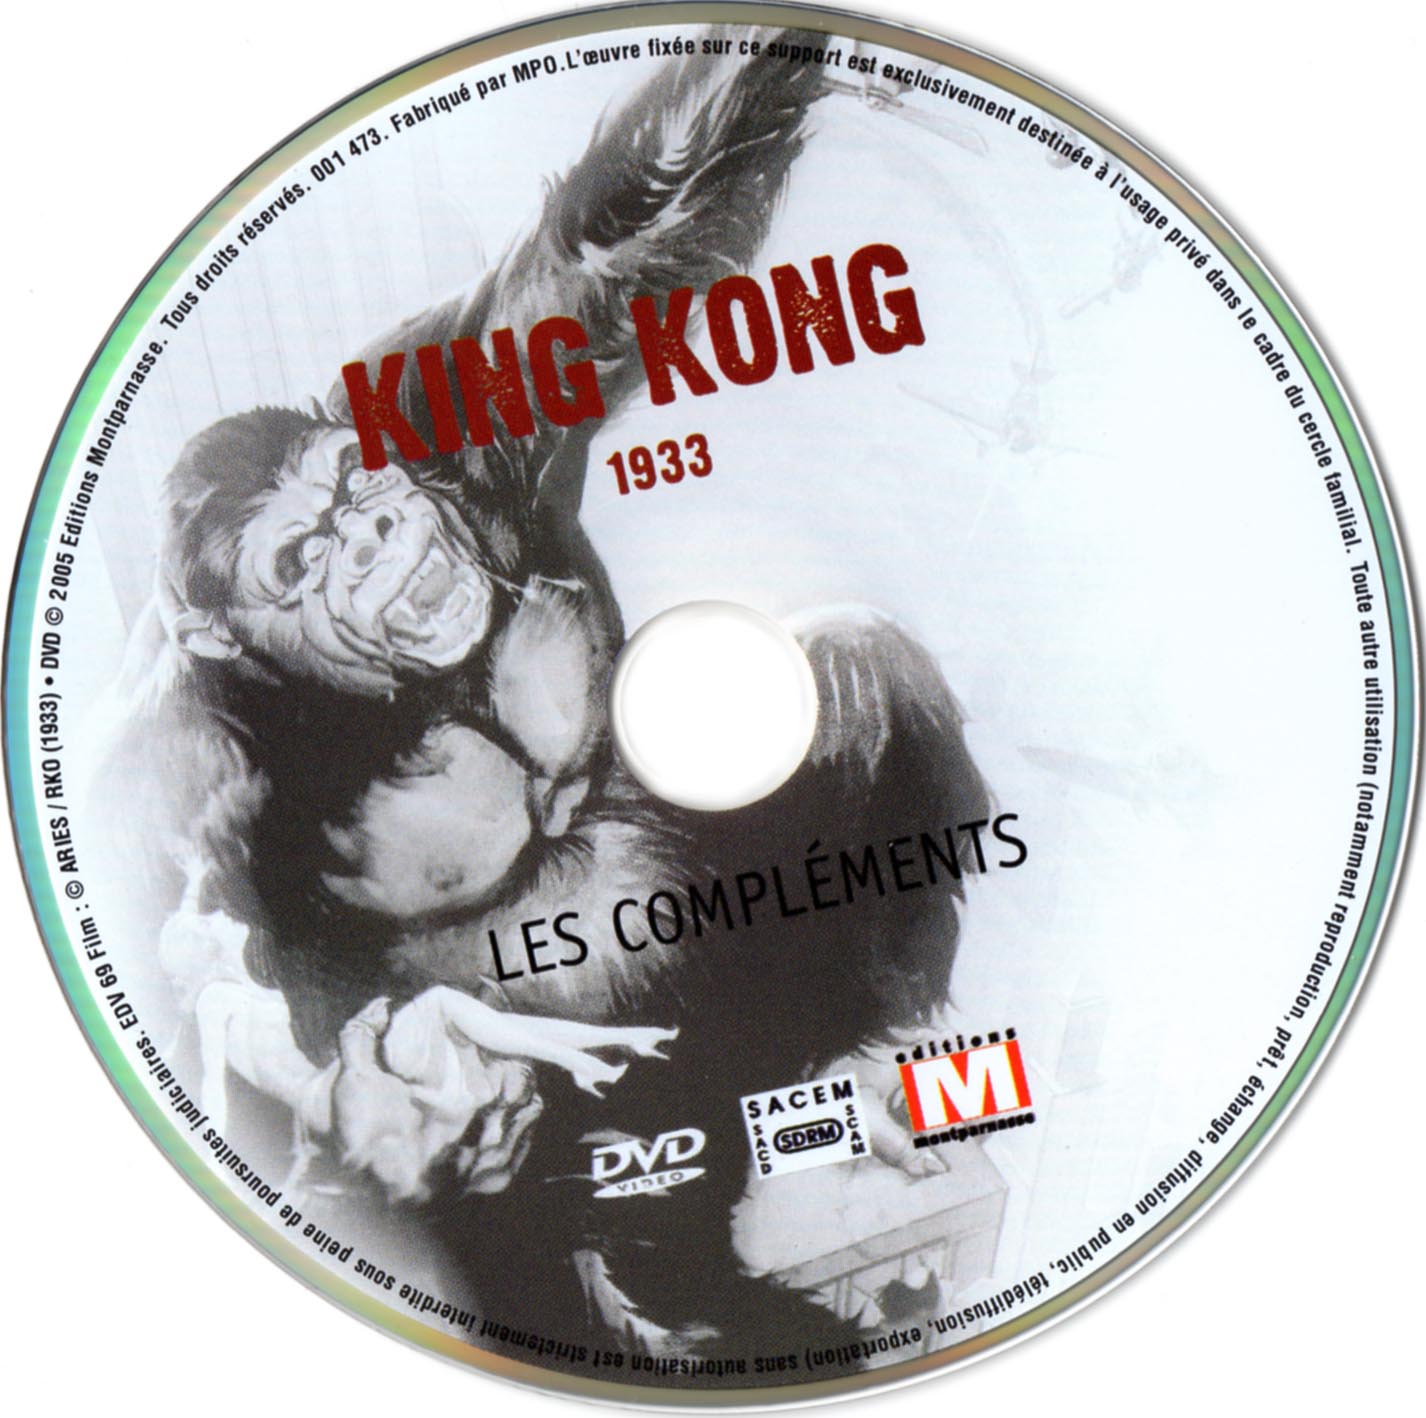 King kong 1933 (BONUS)